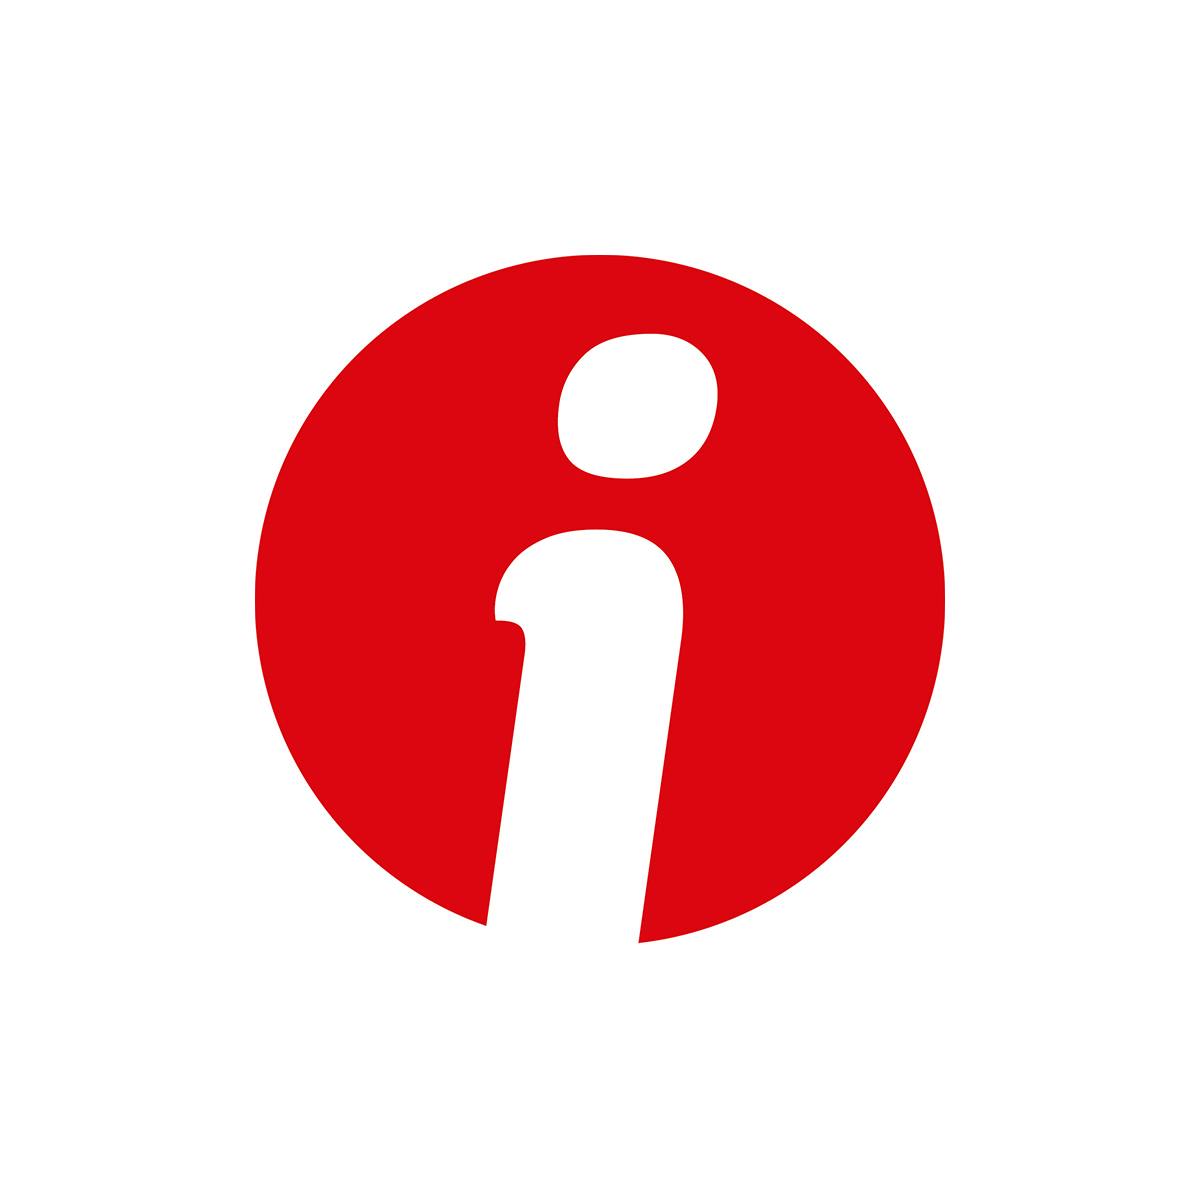 Logo della rivista "Informatore Coop" su sfondo bianco: una circonferenza piena rossa all'interno della quale si inserisce una "i" bianca.